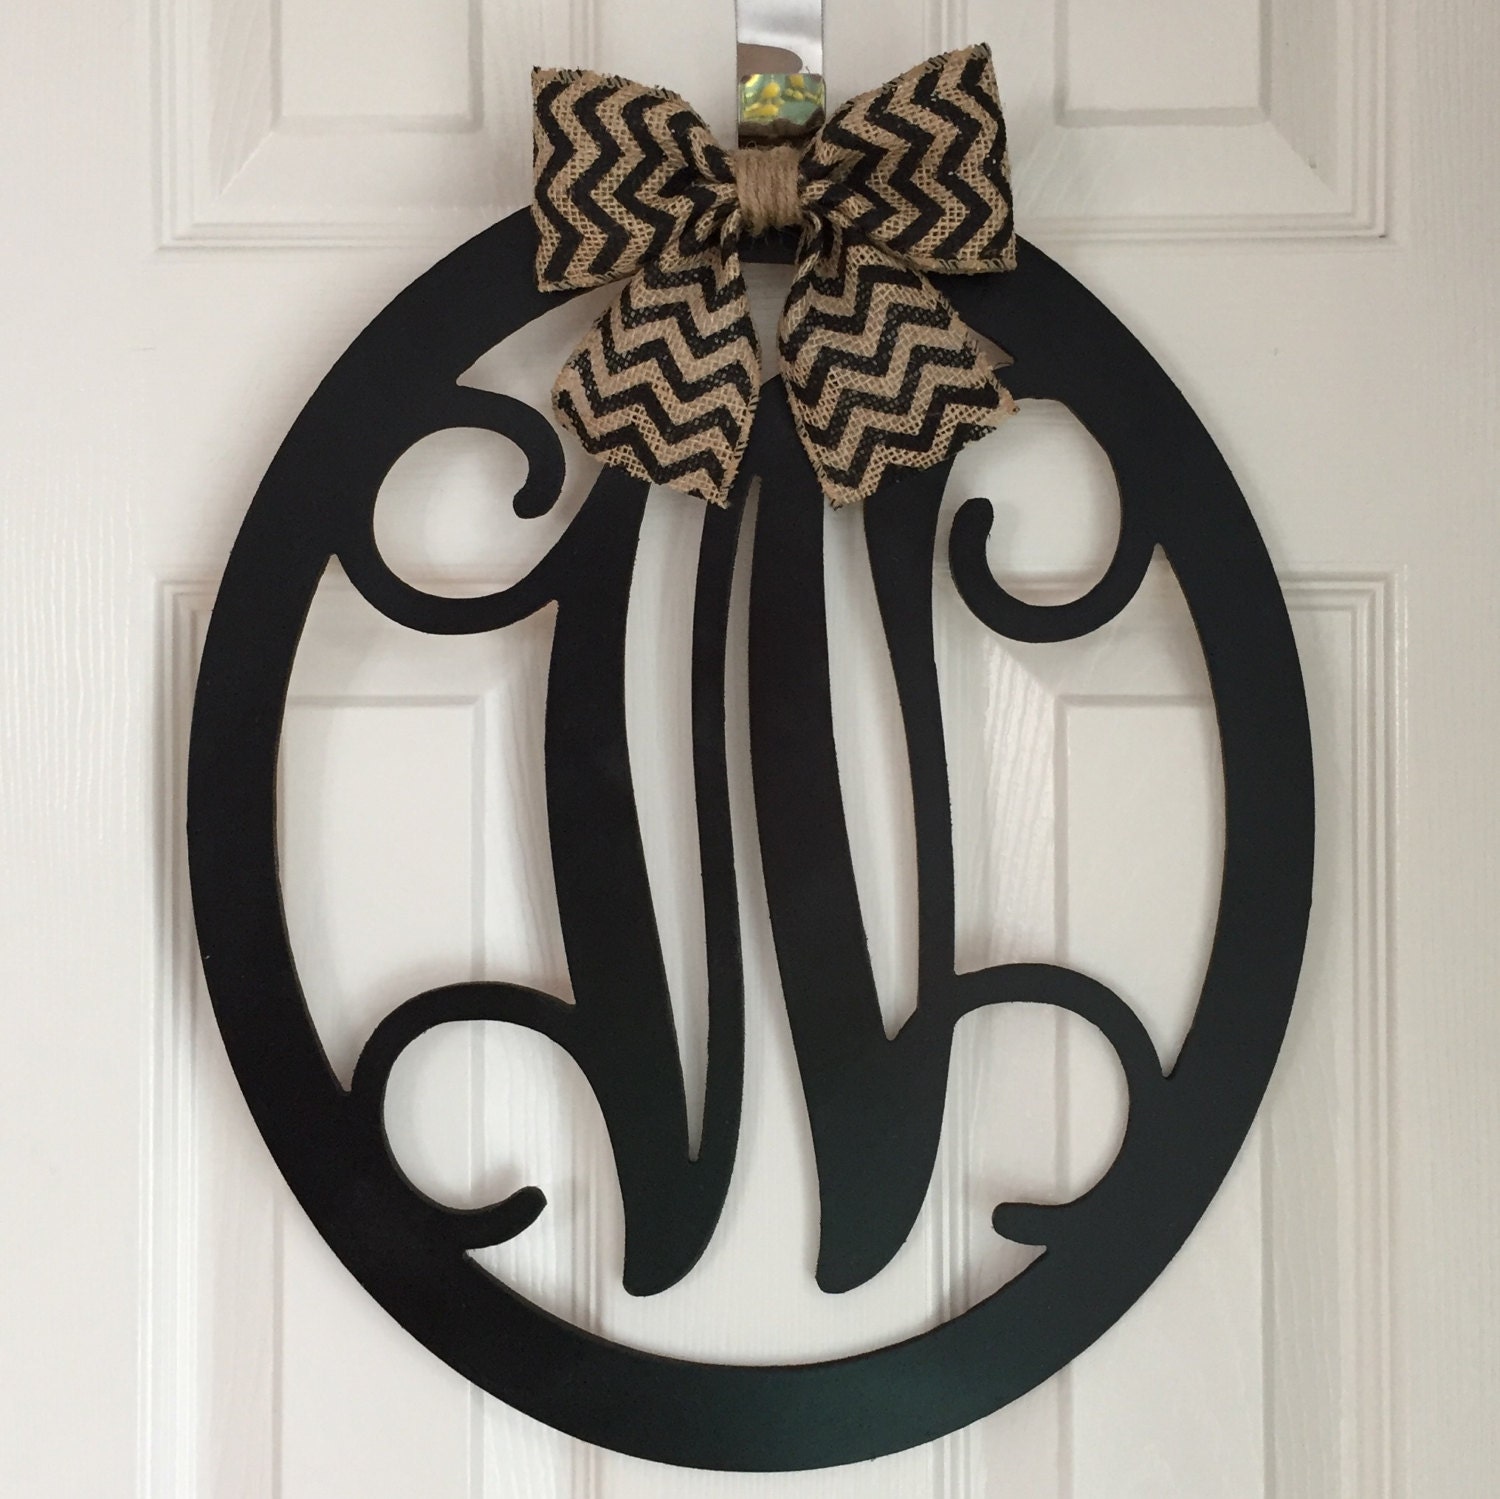 Oval Monogram Door Hanger - Spring Door Hanger - Wood Oval Door Monogram - Black Wood Monogram Hanger - Black Door Decoration - Door Decor